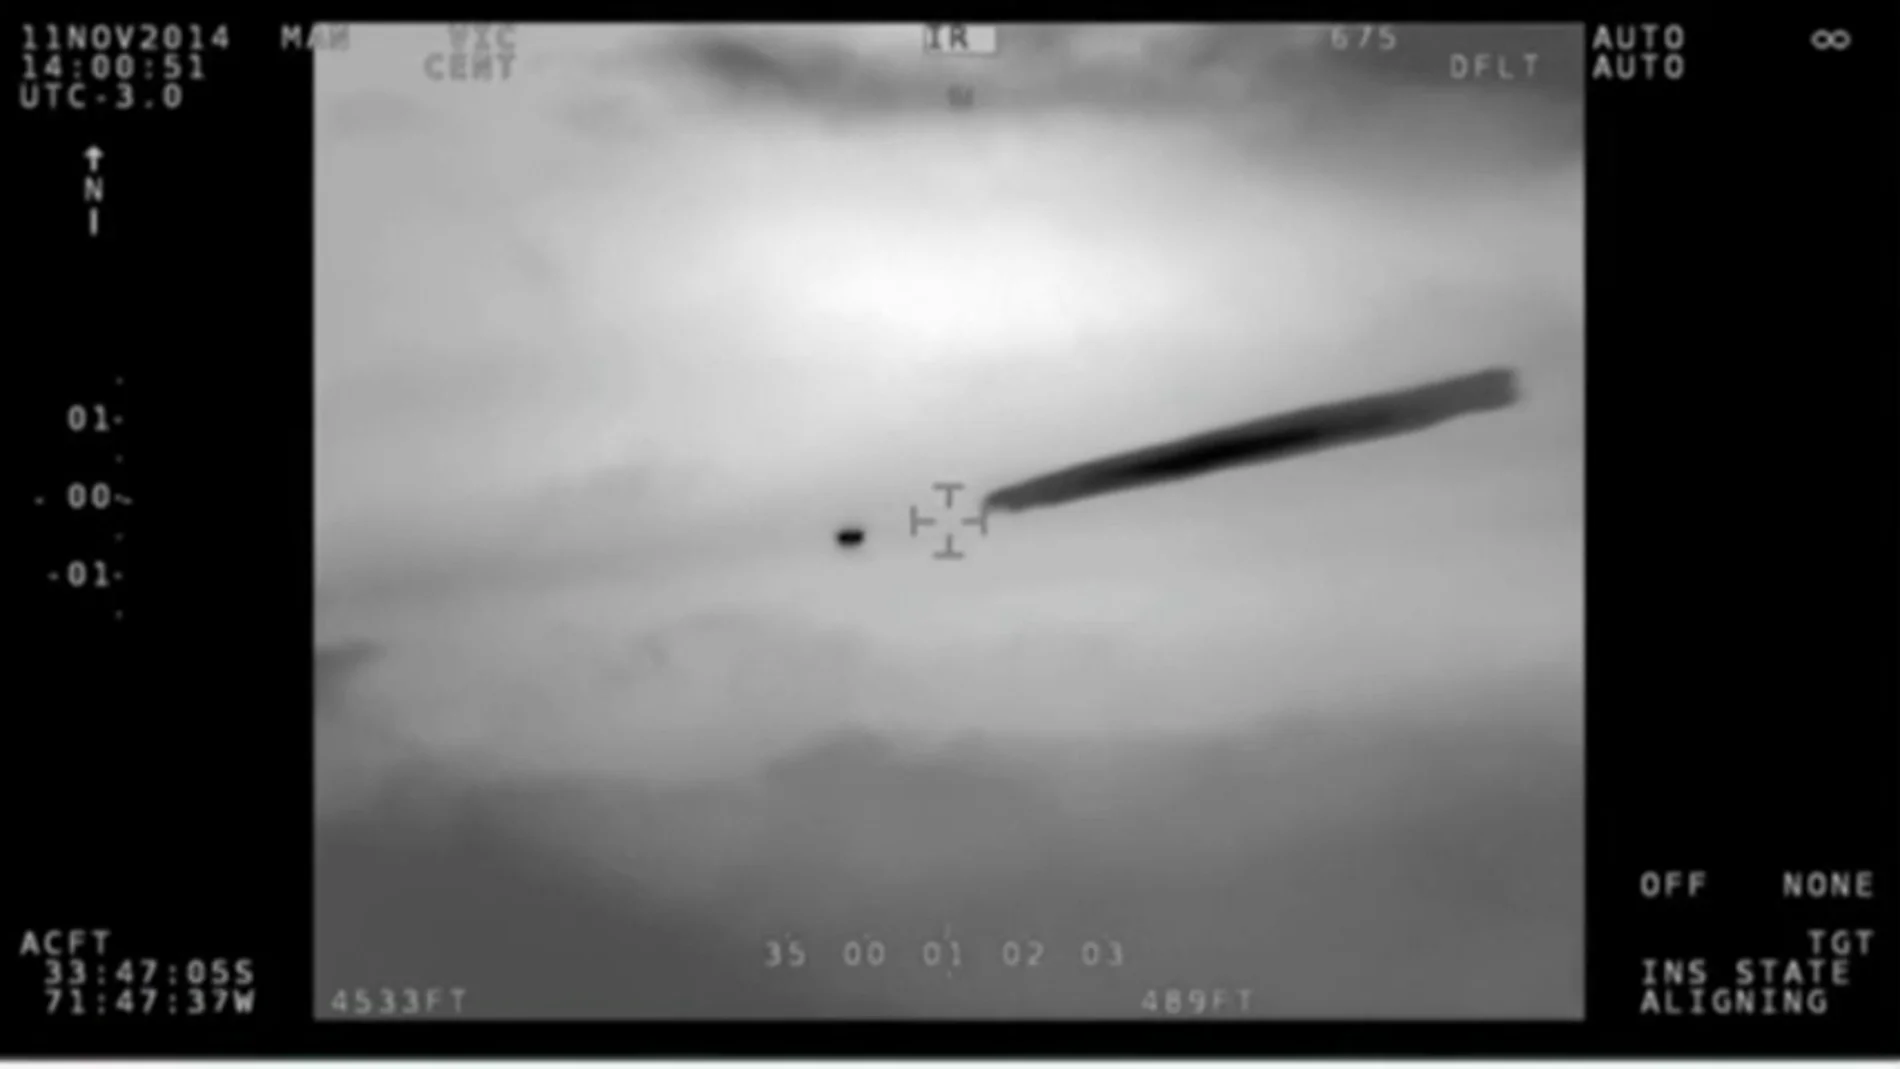 Frame 34.166645 de: El Gobierno de Chile confirma y publica las imágenes militares de un OVNI avistado en 2014